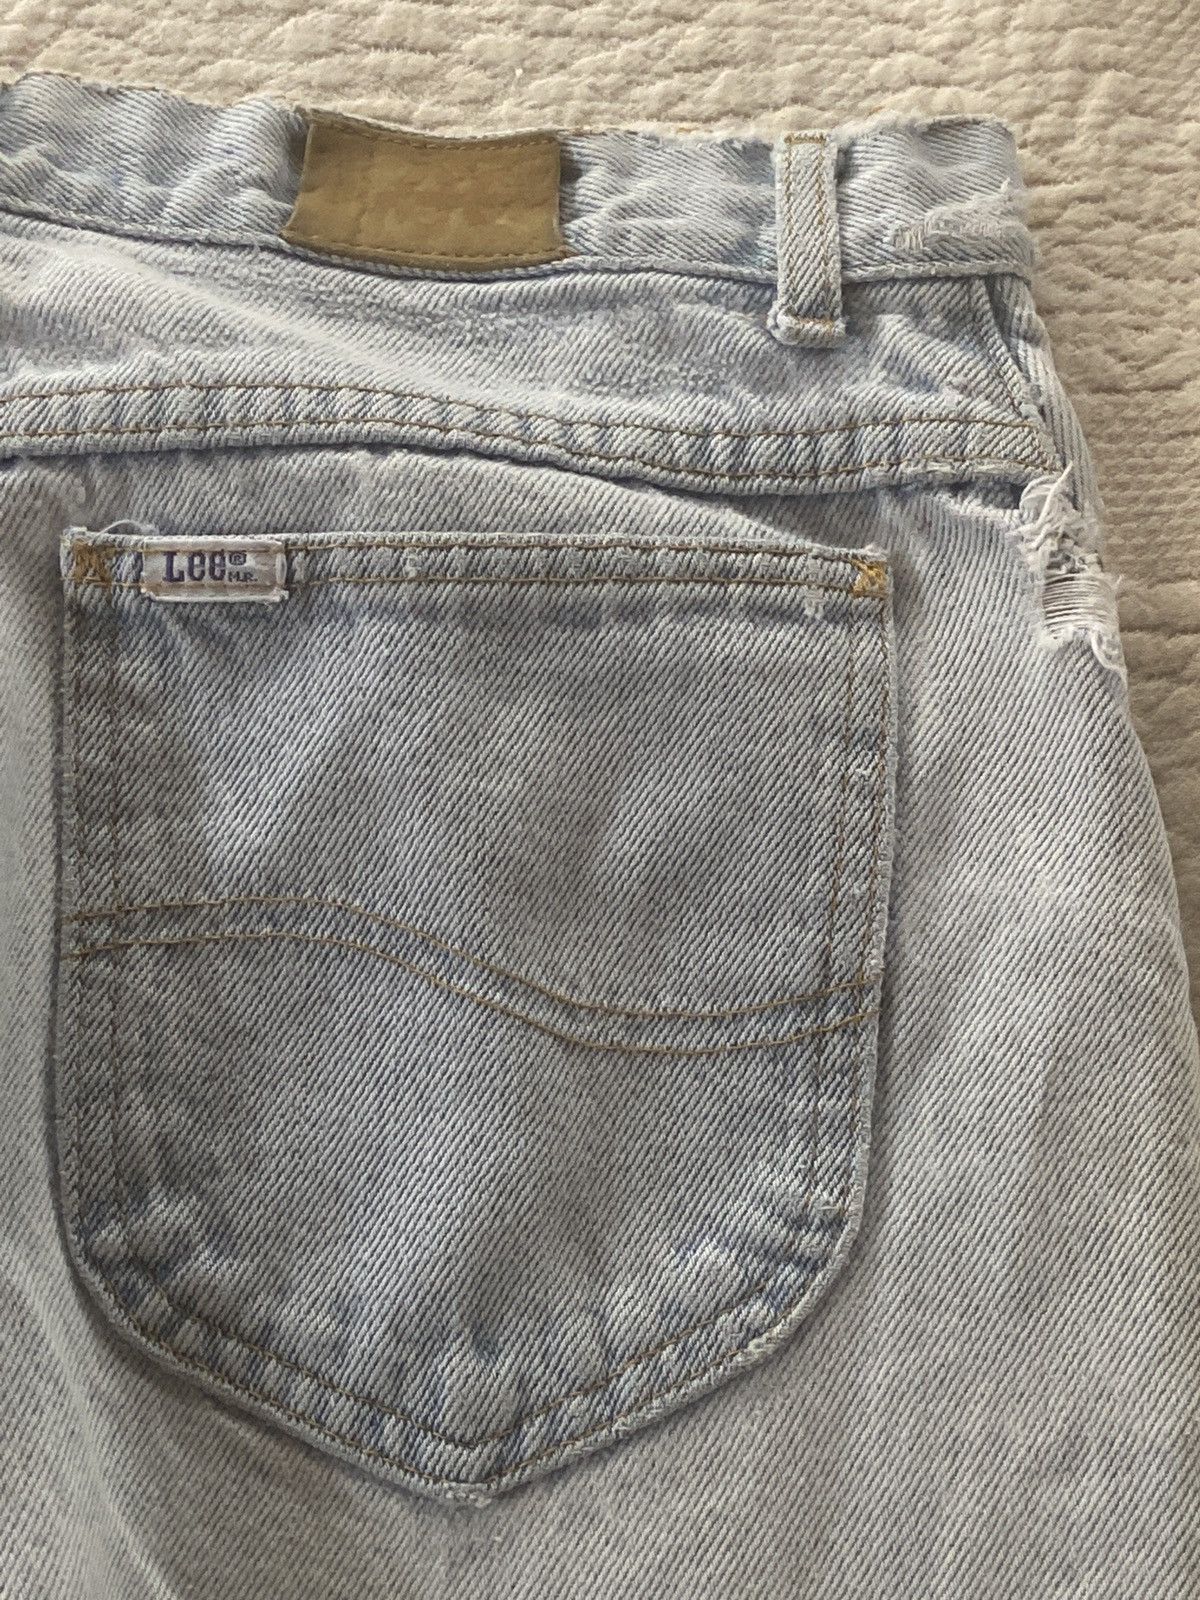 Levi's Vintage lee Jeans Size US 30 / EU 46 - 3 Preview